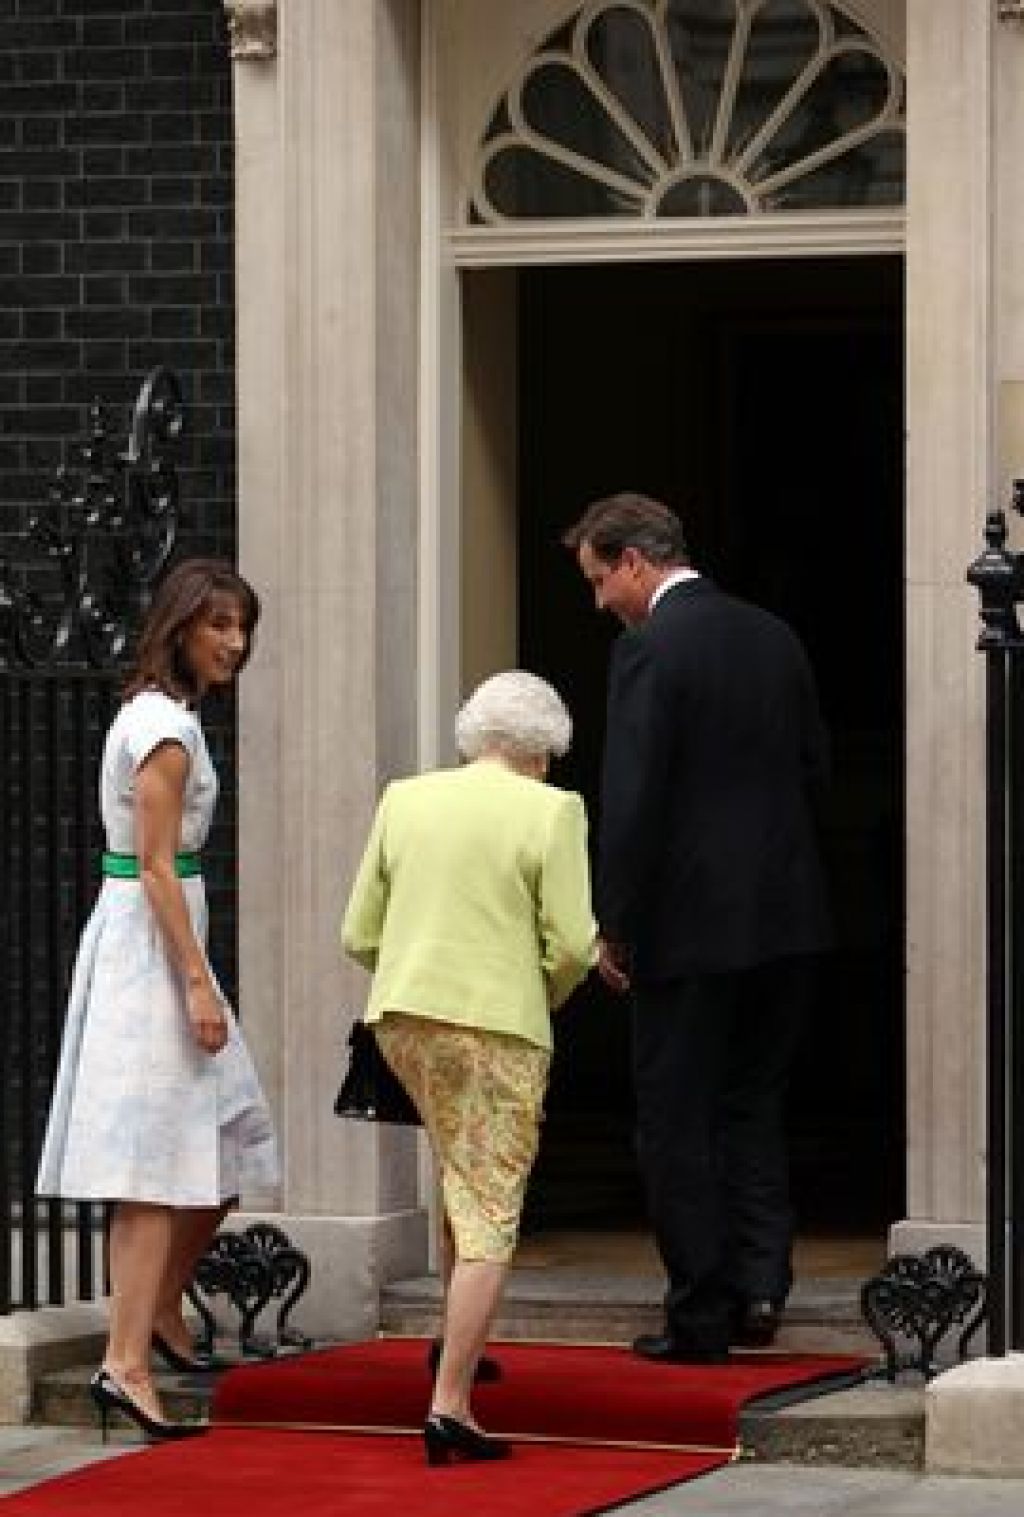 Premier David odprl vrata kraljici Elizabeti